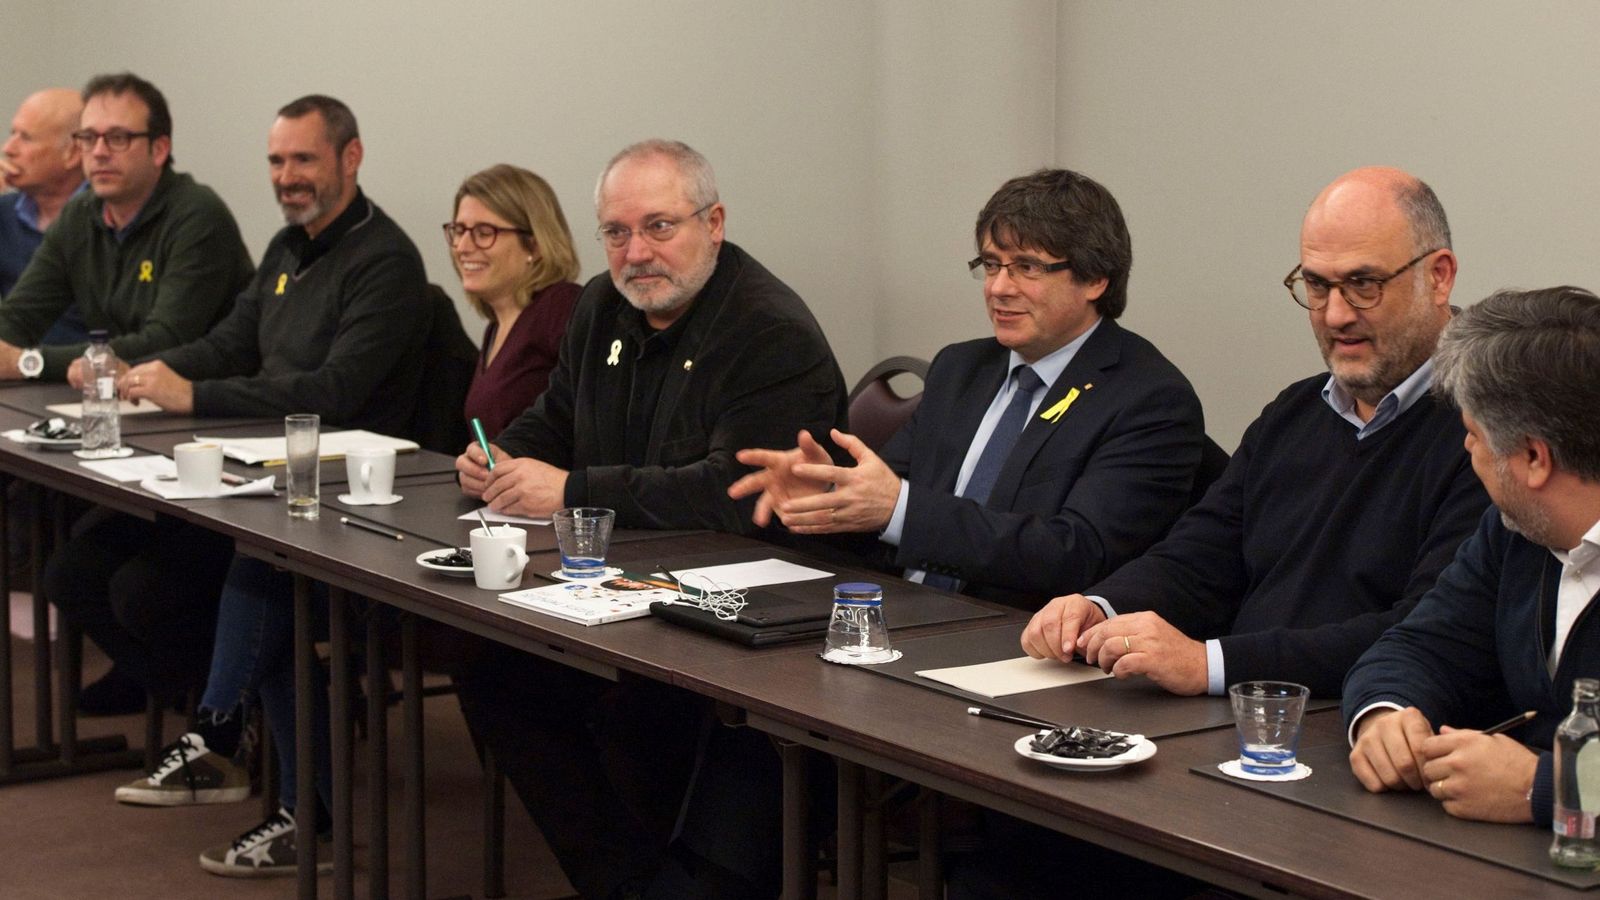 Foto: Puigdemount junto a diputados de JxCAT en Bruselas. Junto a él, Lluís Puig, que ha renunciado a su acta. (Efe)